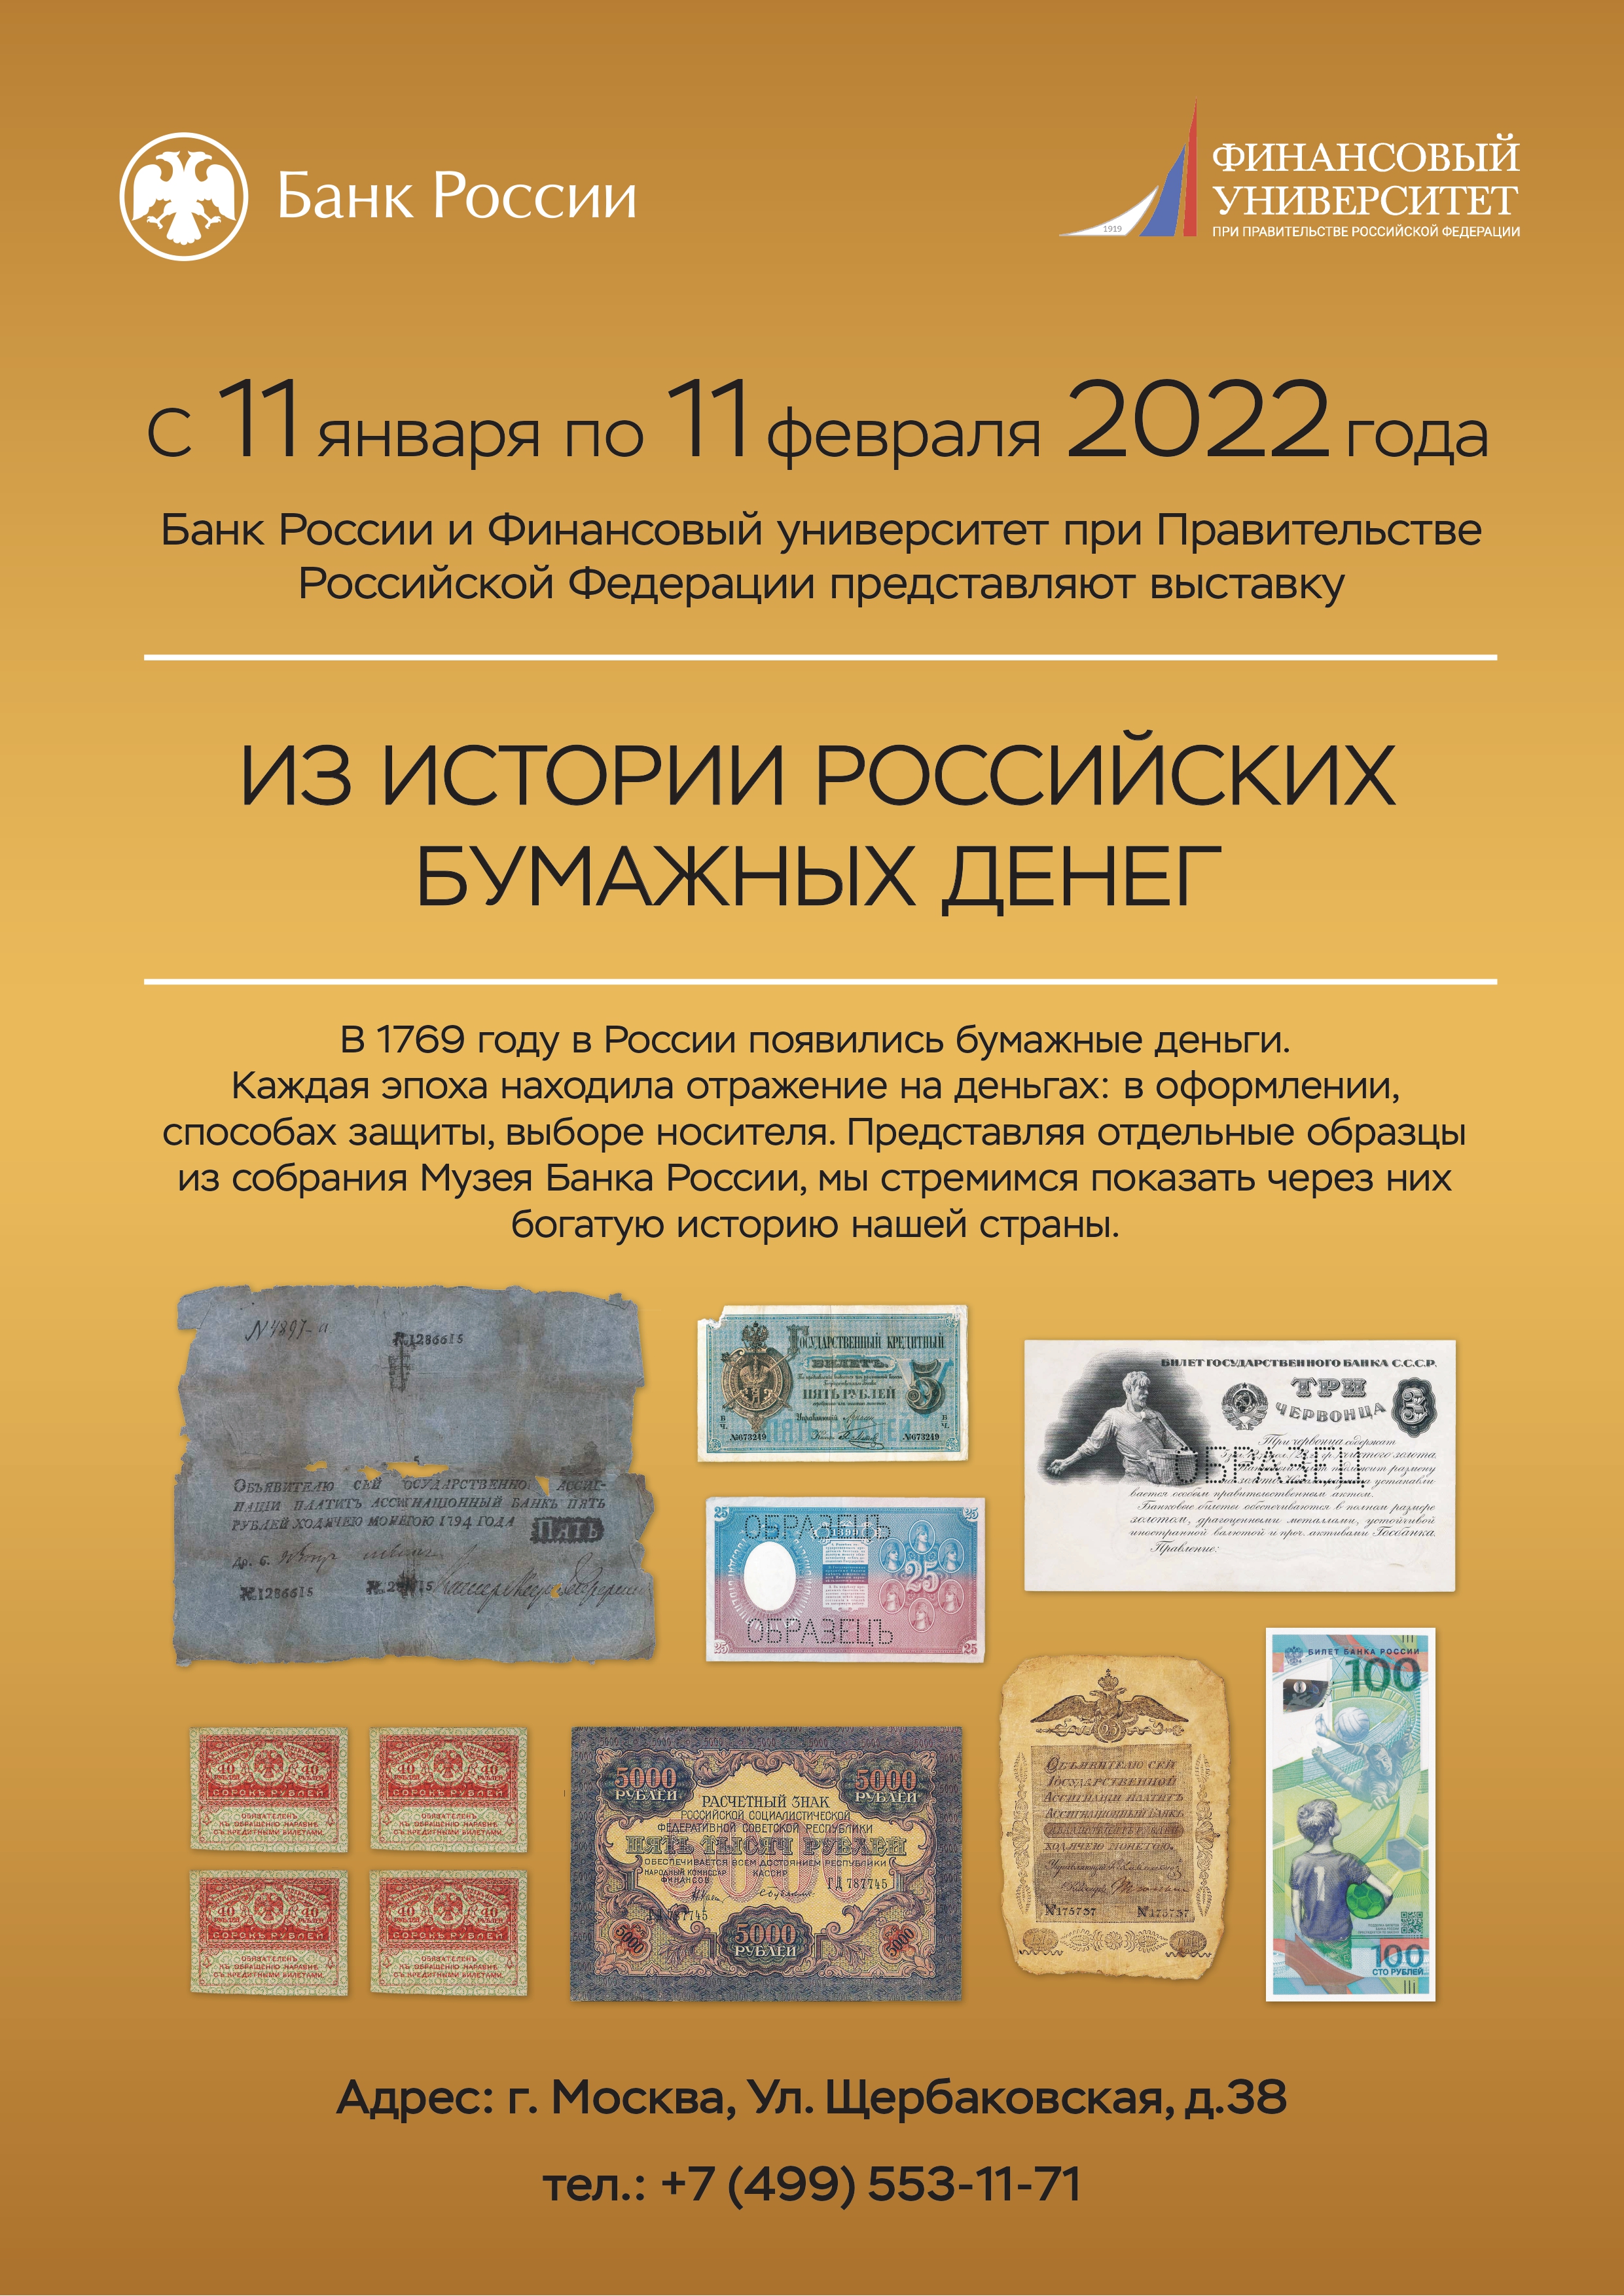 С 11 января 2022 года в корпусе Юридического факультета пройдет выставка Банка России «Из истории российских бумажных денег»